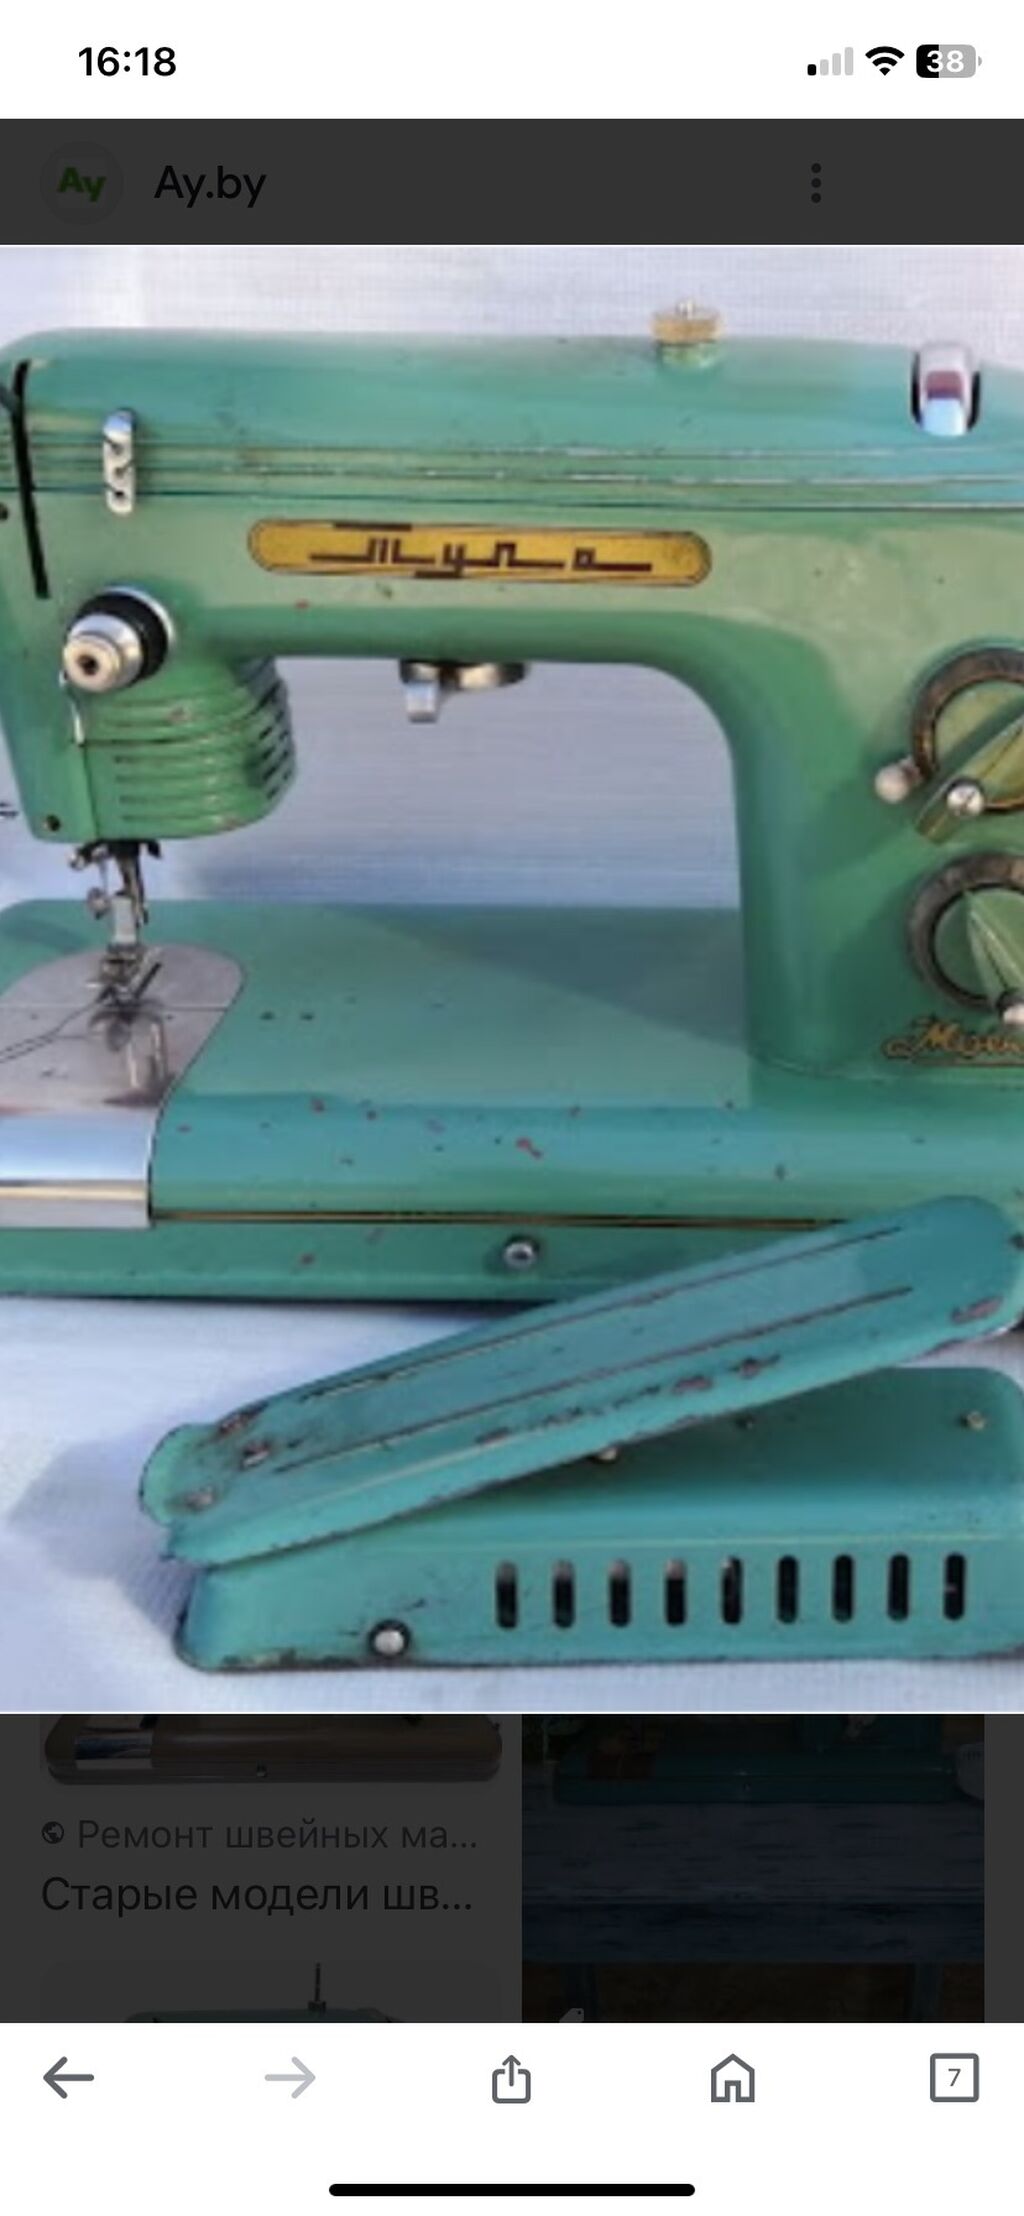 Ремонт швейных машин в Туле — адреса, цены